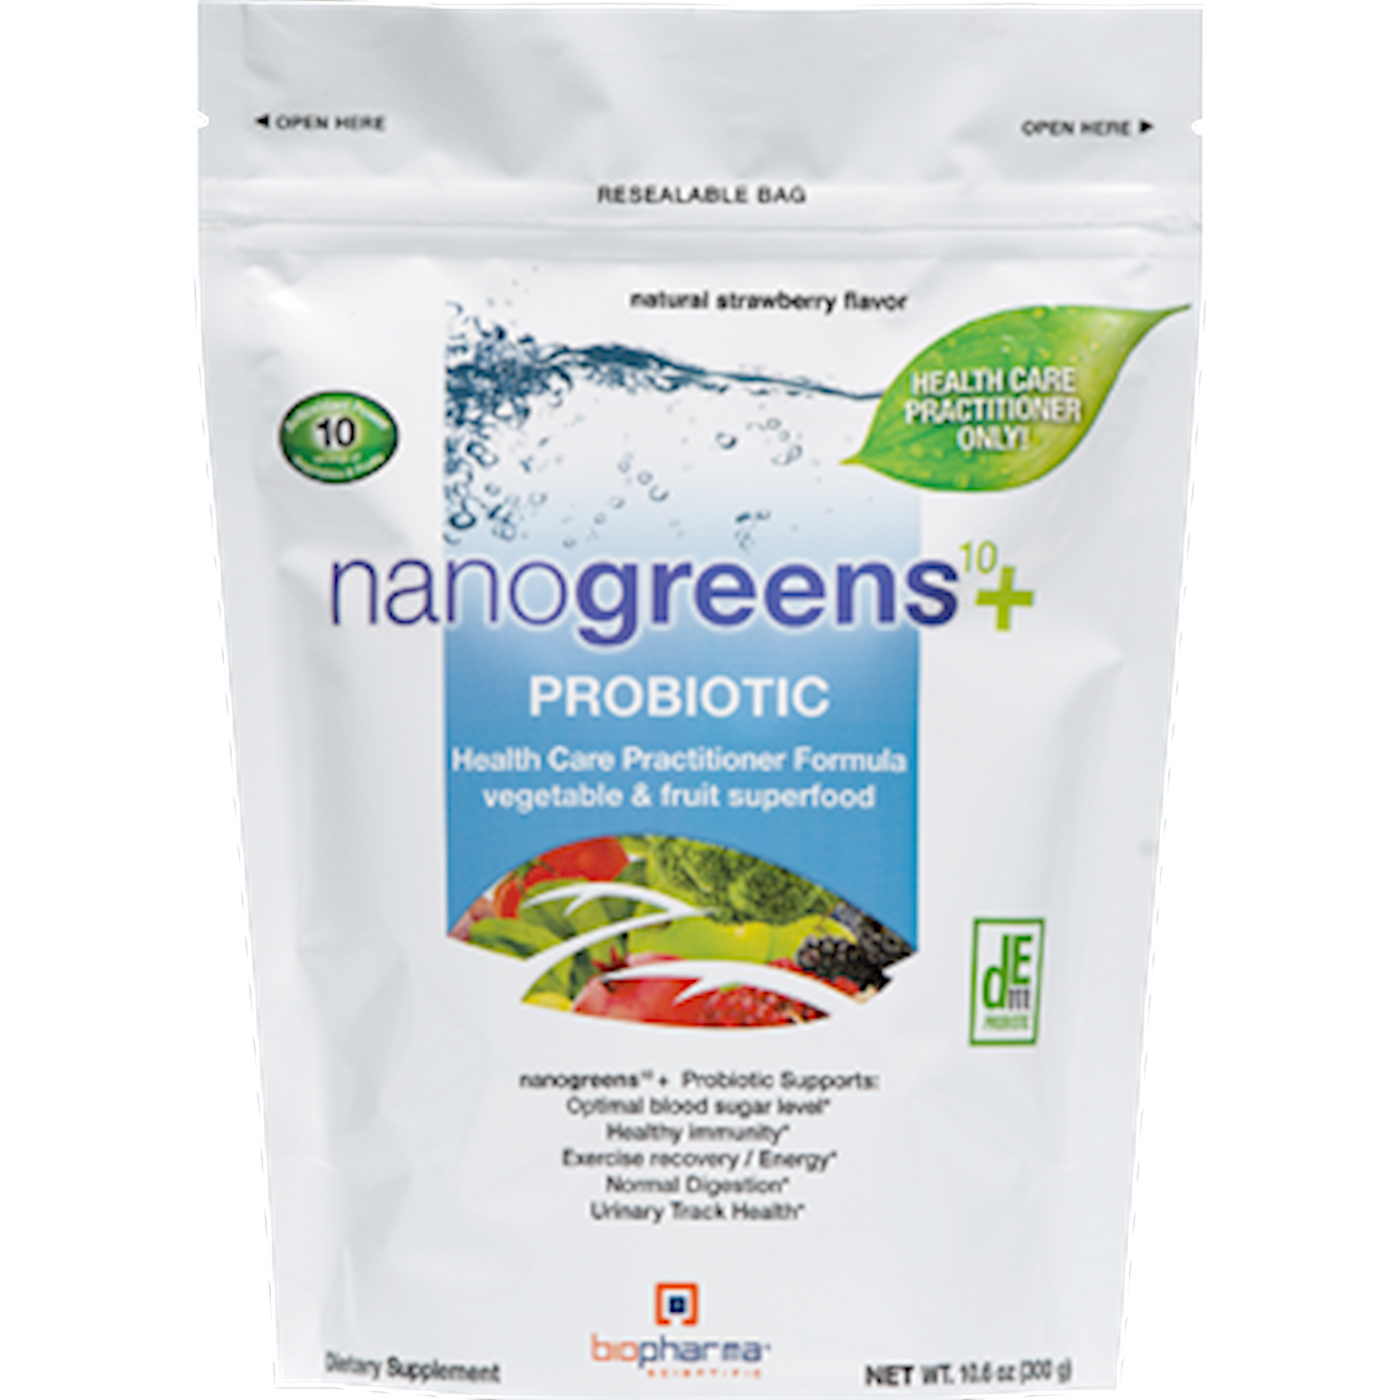 nanogreens10+Probiotic  Curated Wellness